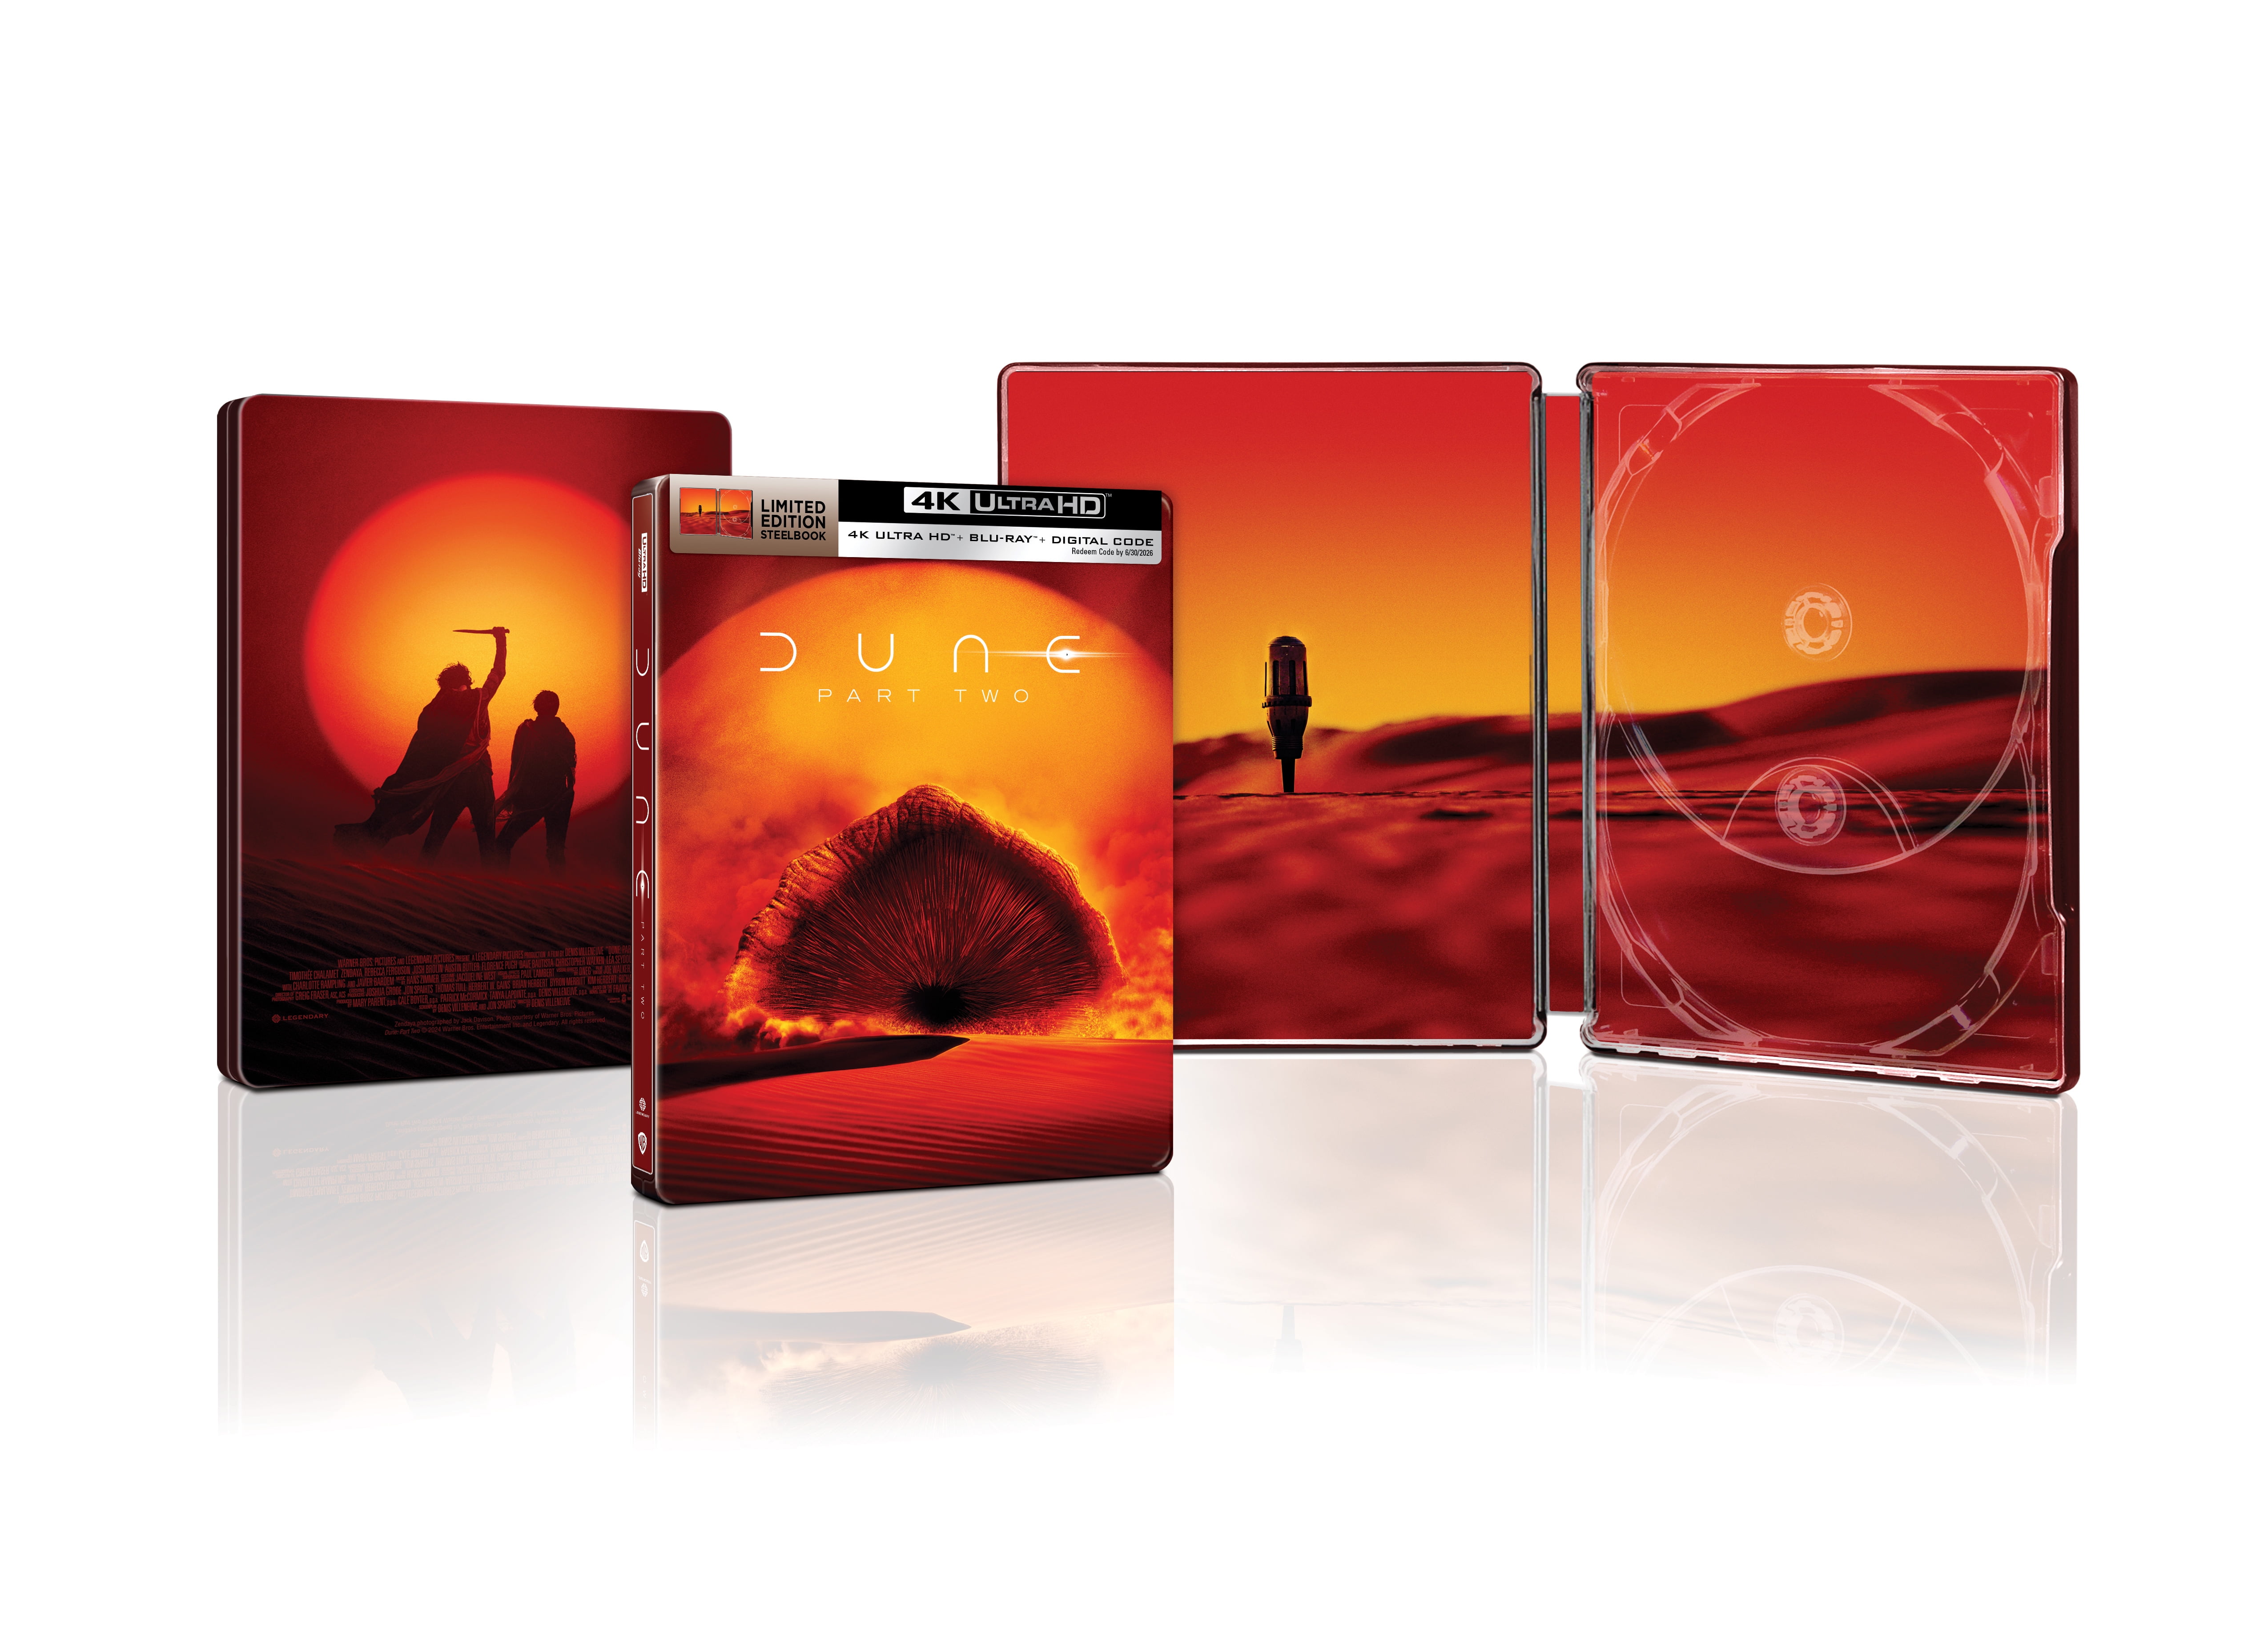 Dune: Part Two (Steelbook) (4K Ultra HD + Blu-ray + Digital Copy) $34.99